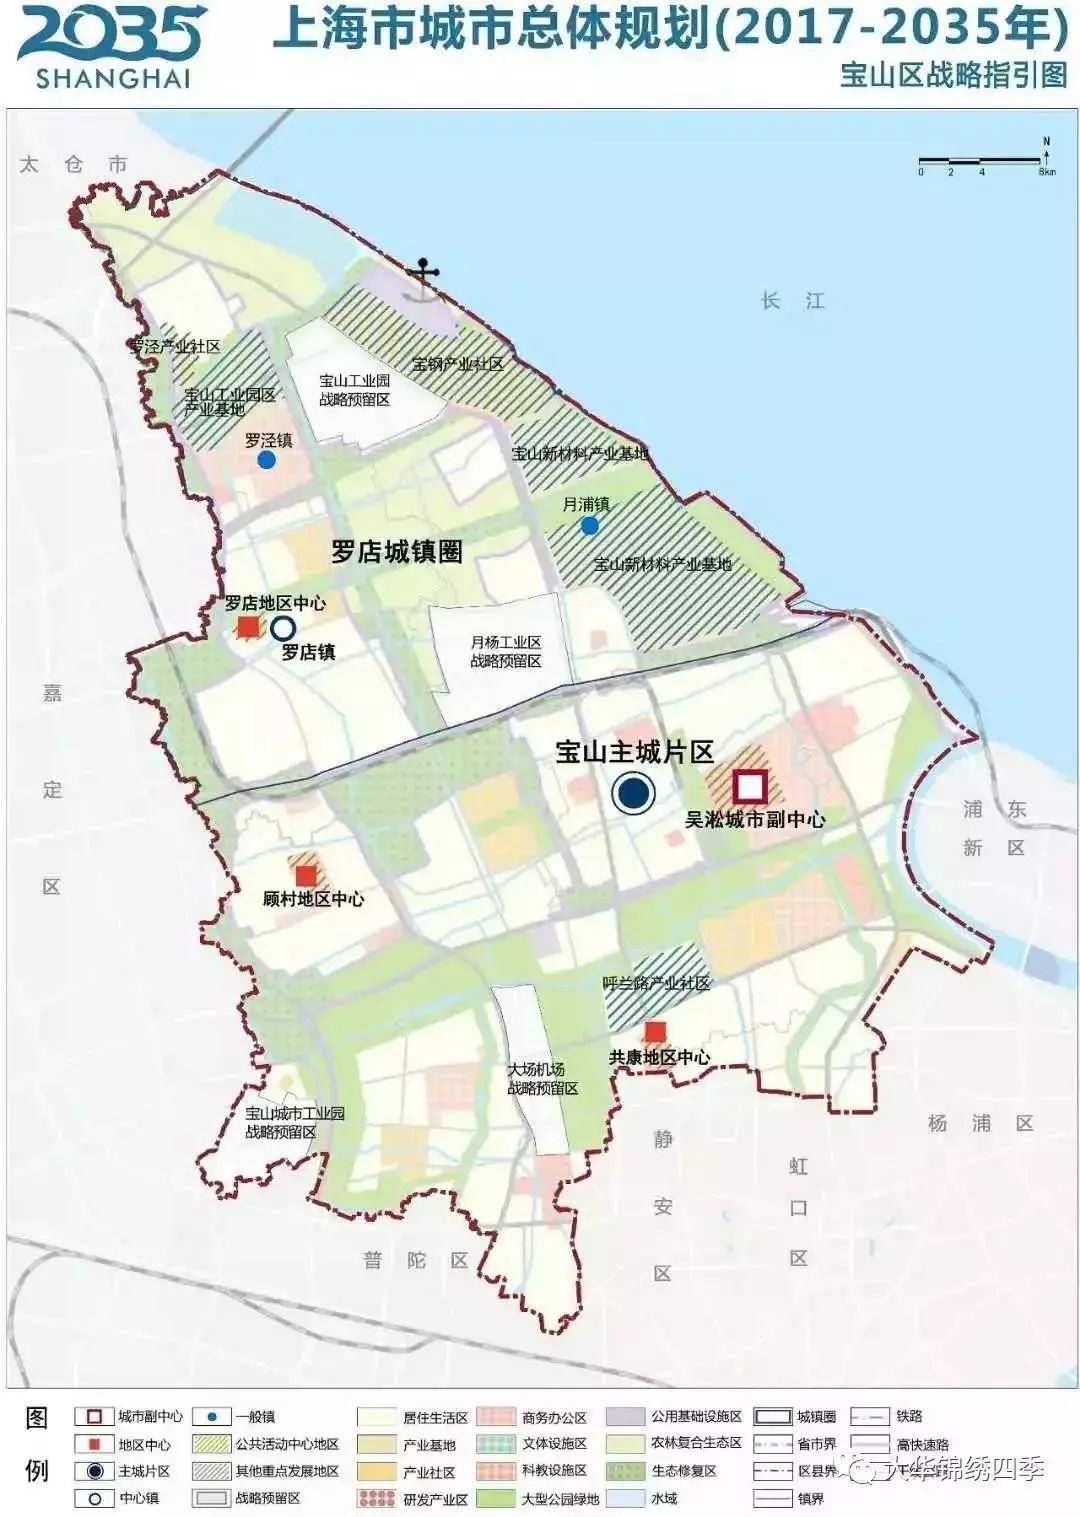 顾村老集镇改造概念规划方案部分披露2公里滨水步道7万平米滨水公园让